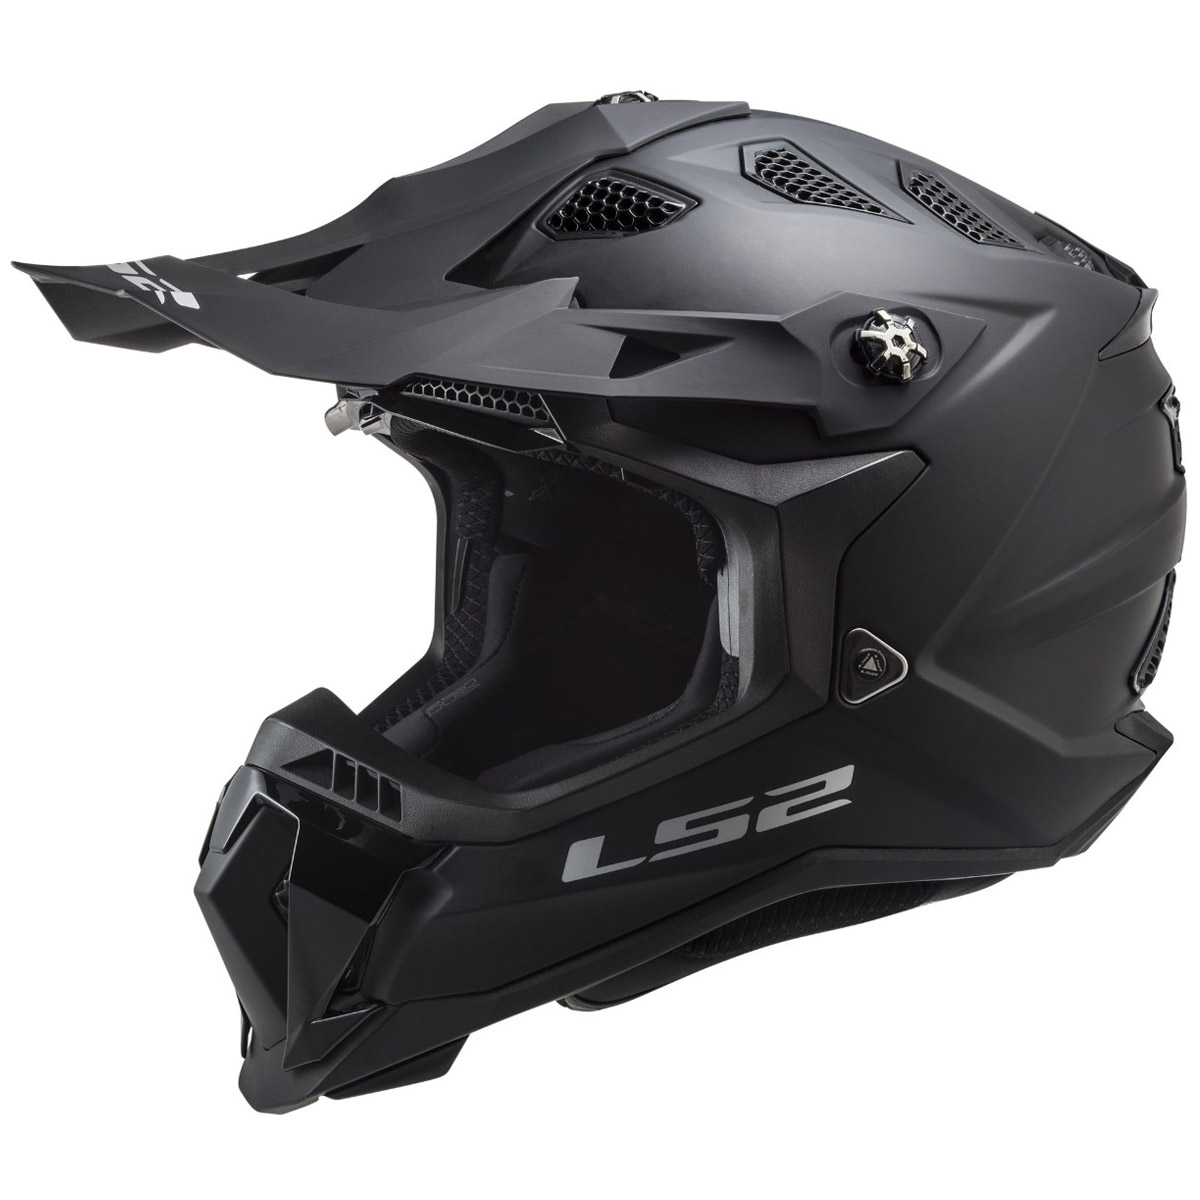 LS2 Helmets Subverter Evo II Noir MX700 Helm, schwarz matt